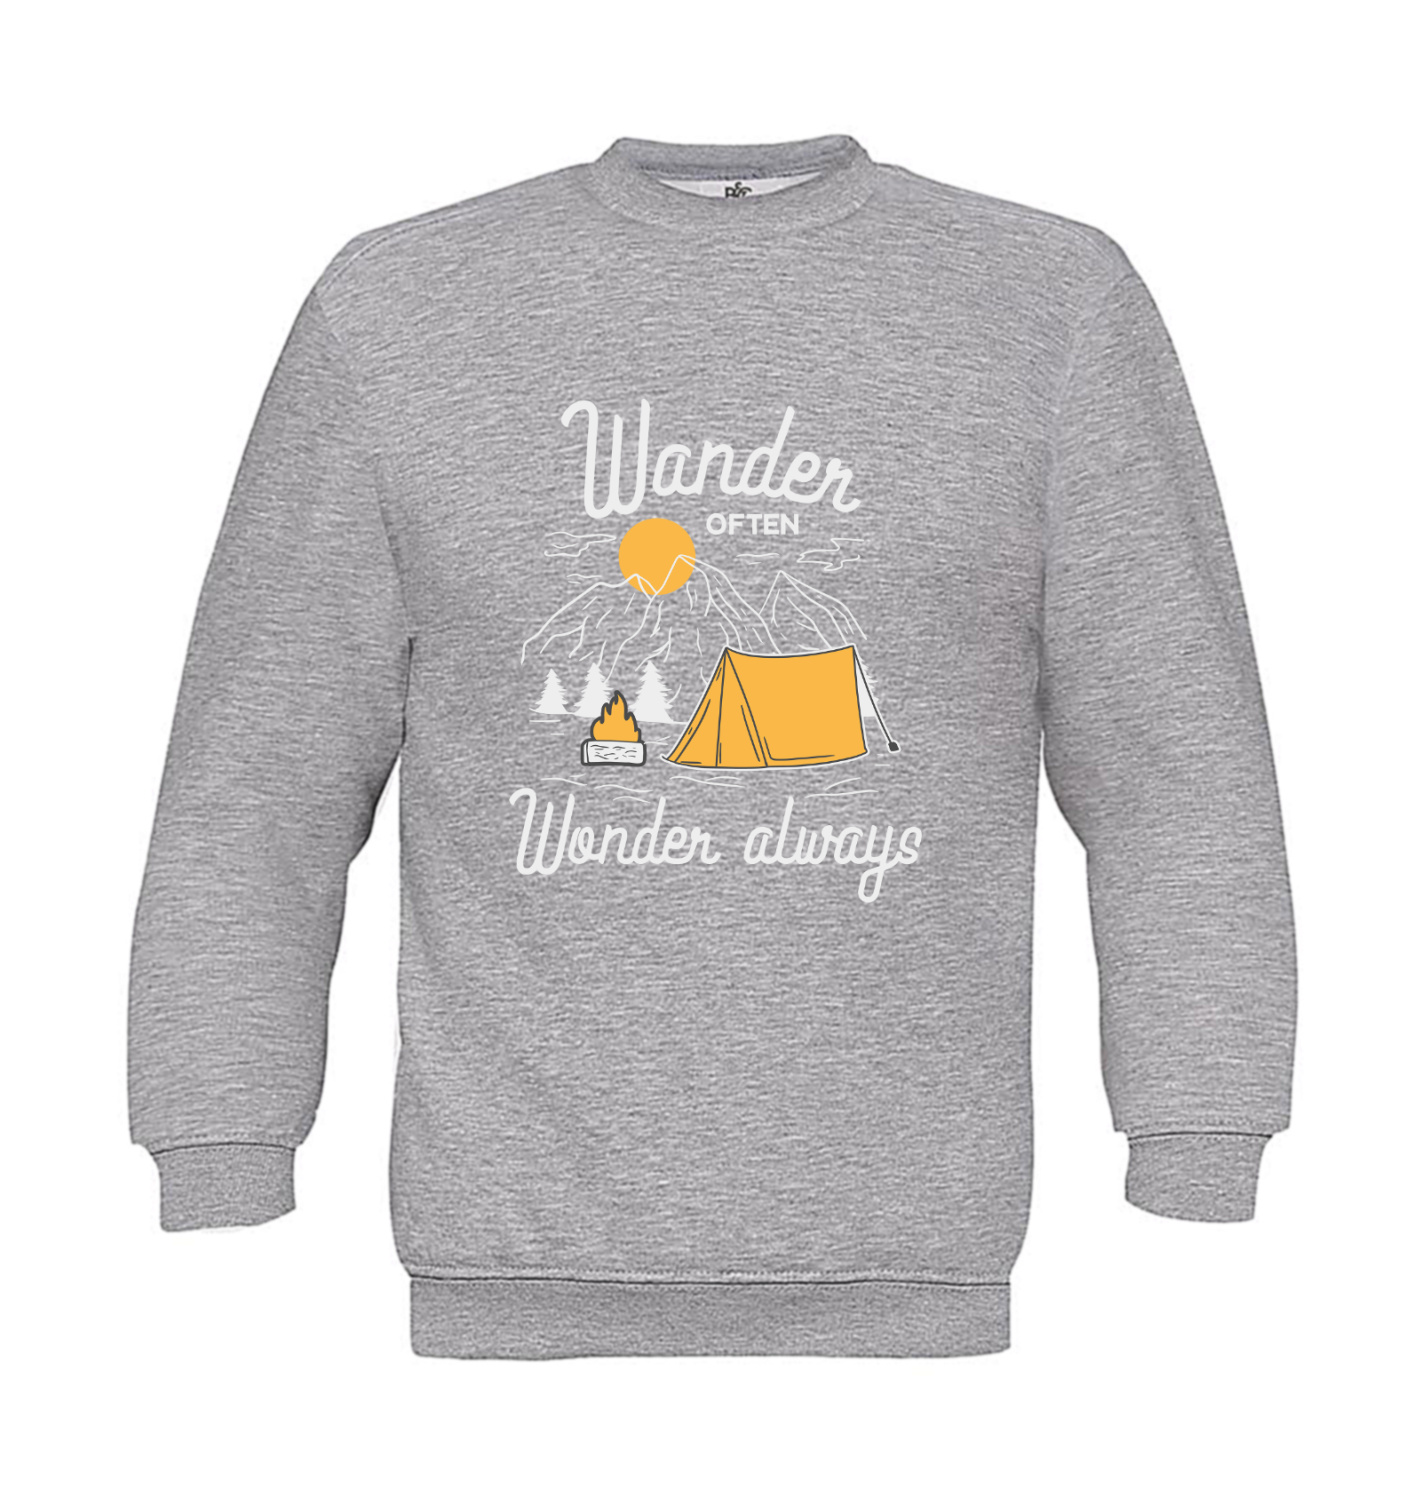 Sweatshirt Kinder Outdoor - Wander often - Wonder always